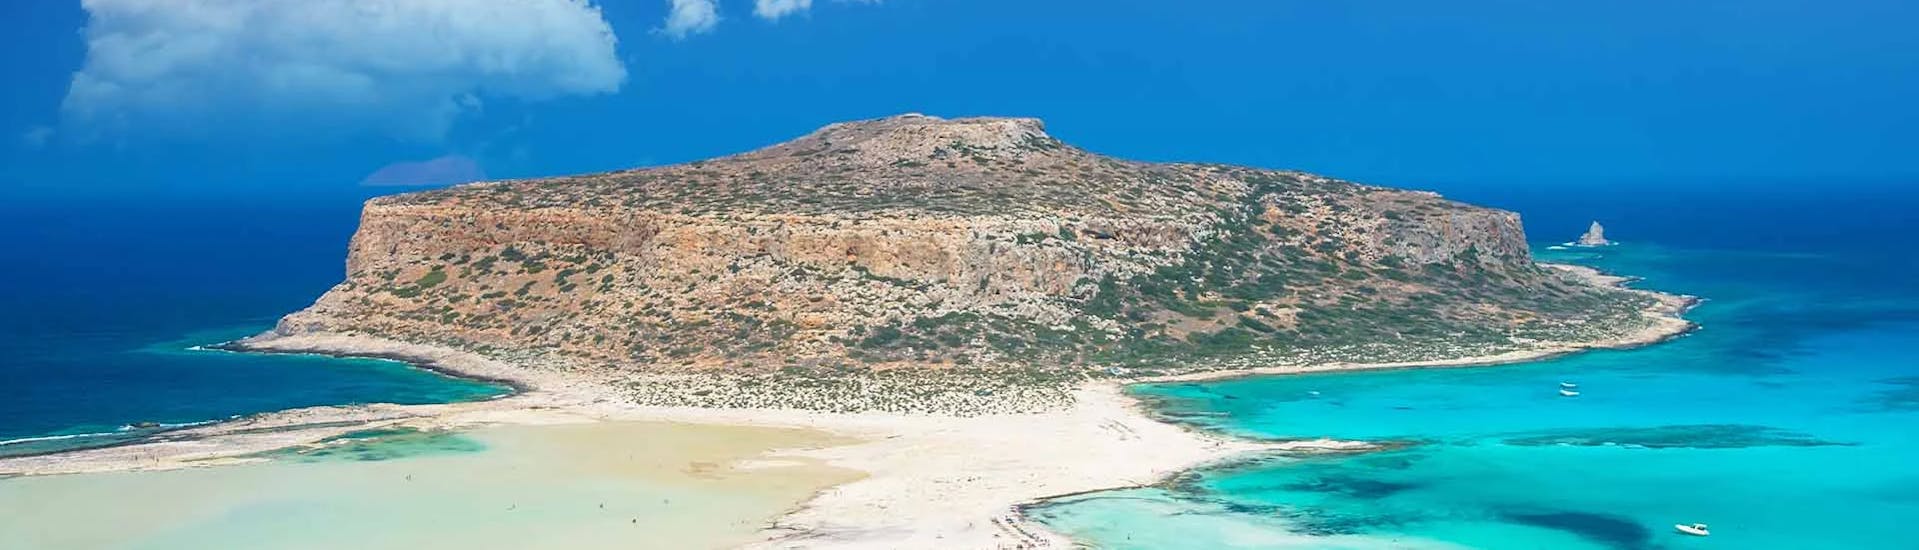 La isla de Gramvousa, que podrás visitar durante el paseo en barco privado desde Falasarna a la laguna de Balos y Gramvousa.